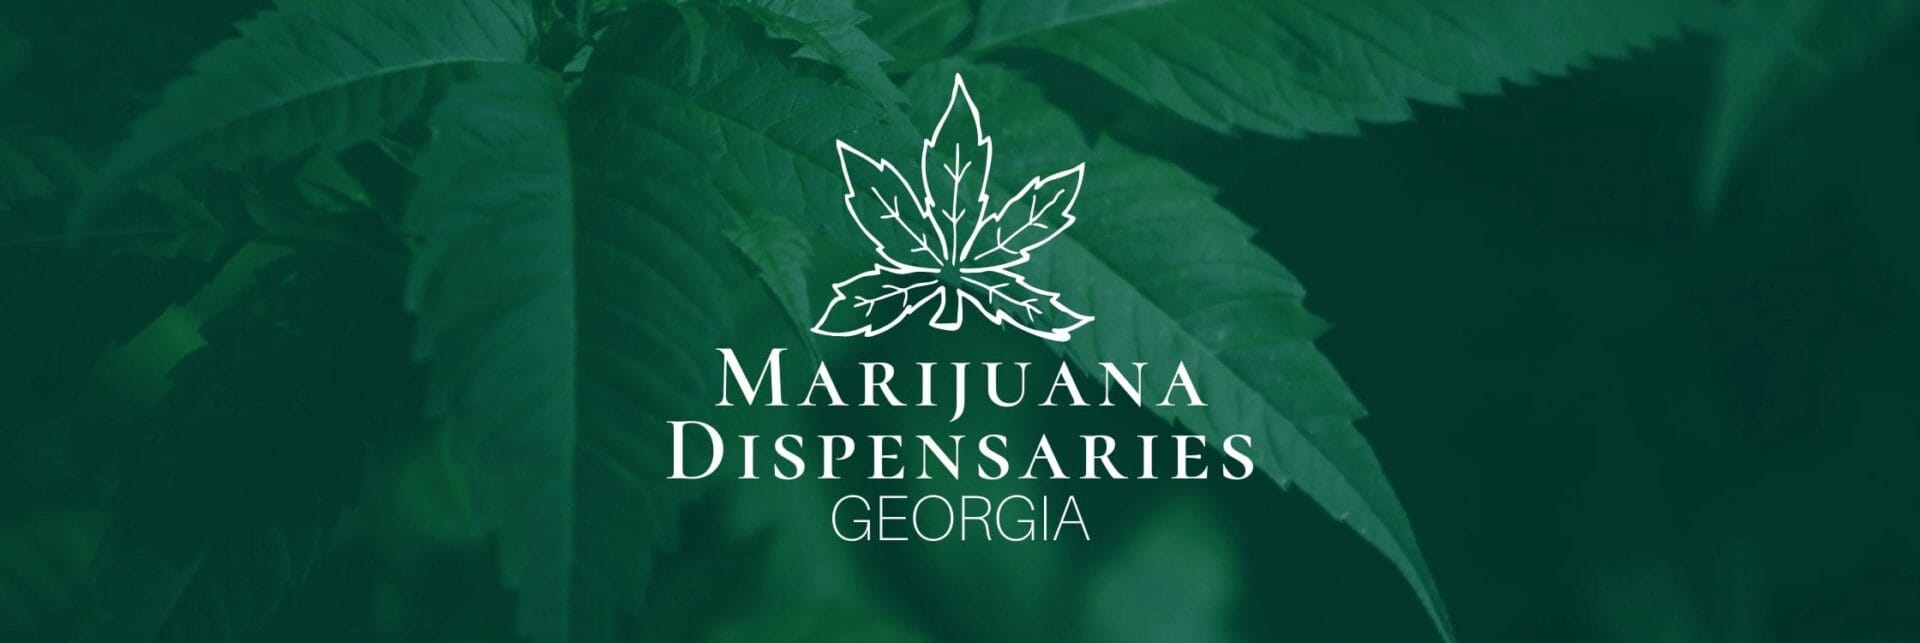 Marijuana Dispensaries in Georgia